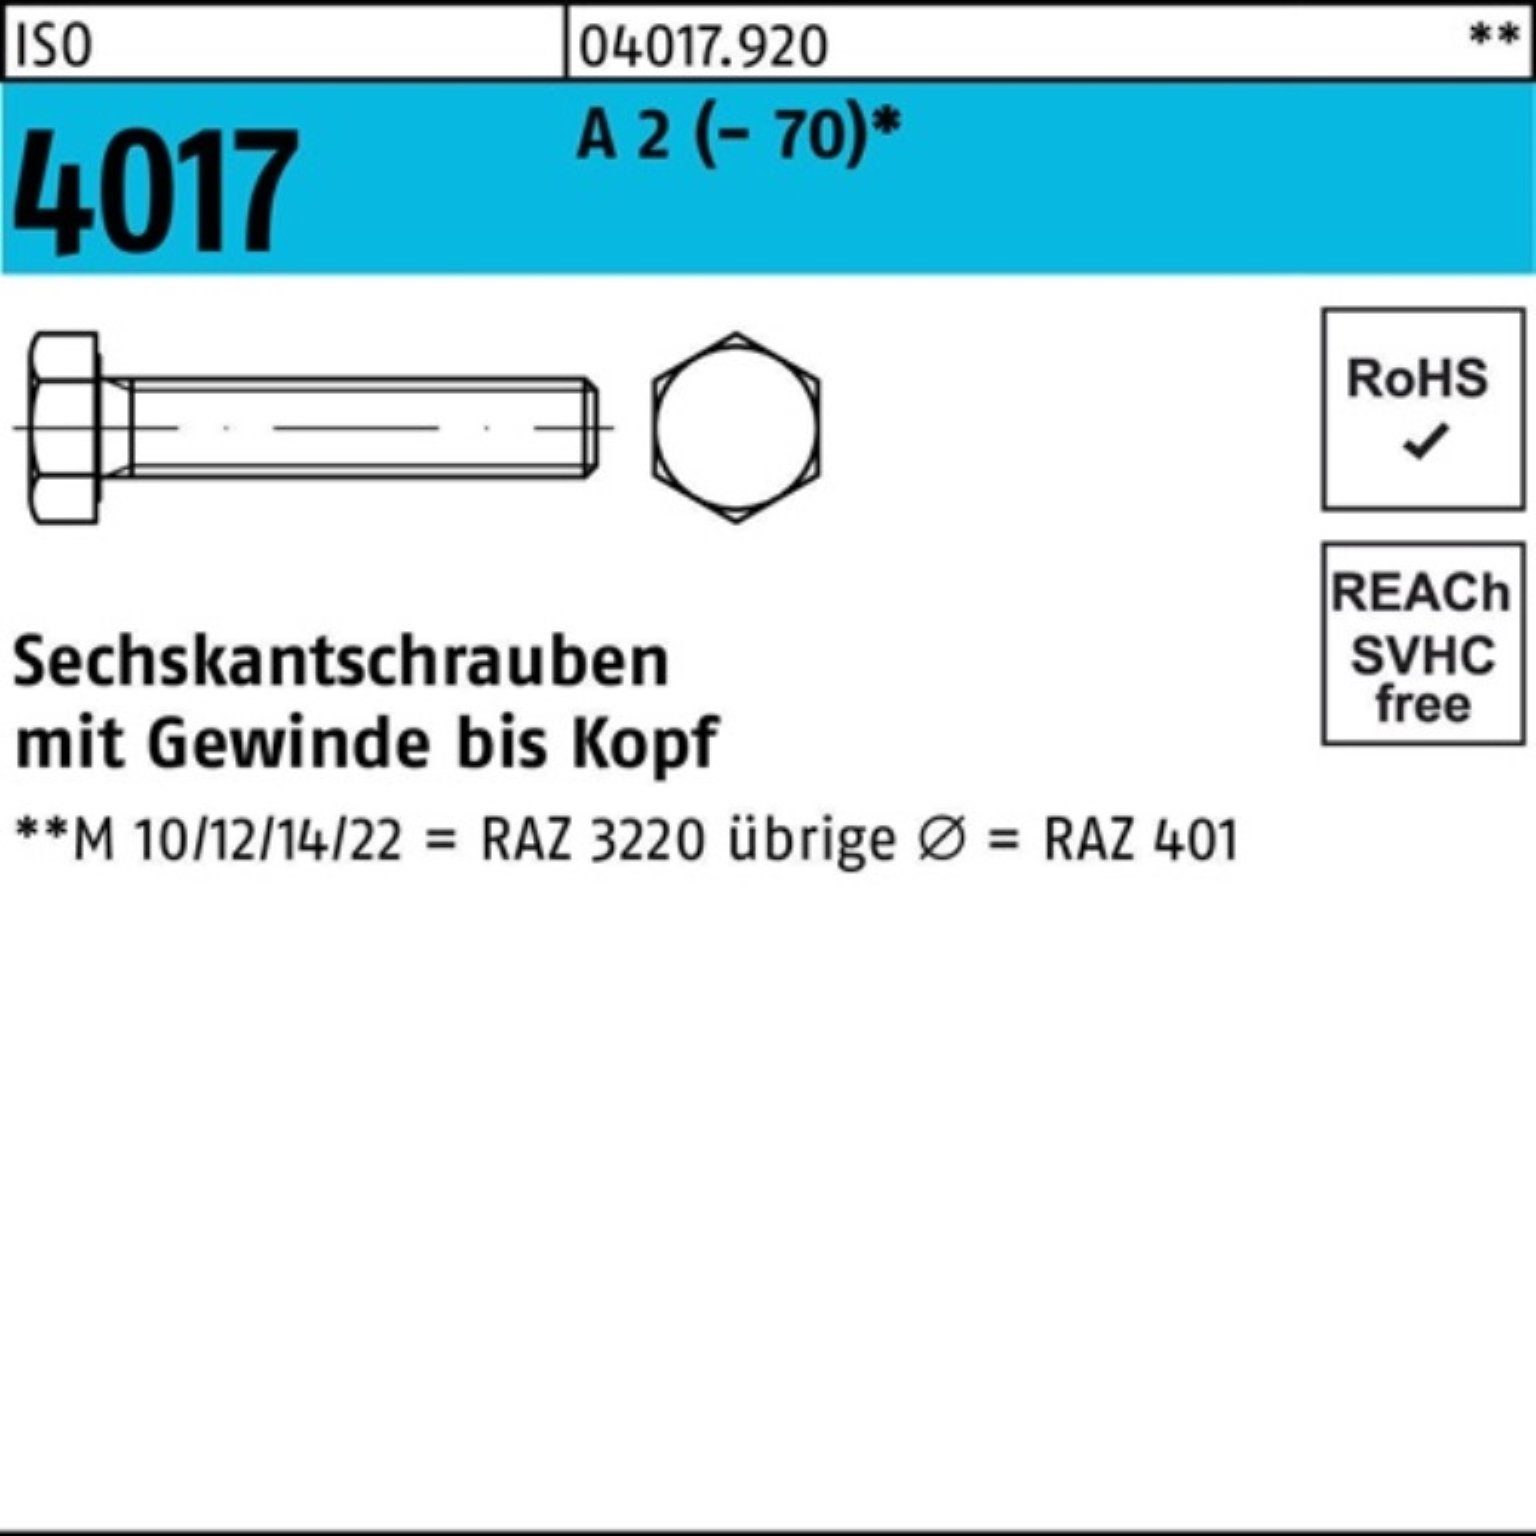 Bufab Sechskantschraube 100er Pack Sechskantschraube ISO 4017 VG M33x 110 A 2 (70) 1 Stück